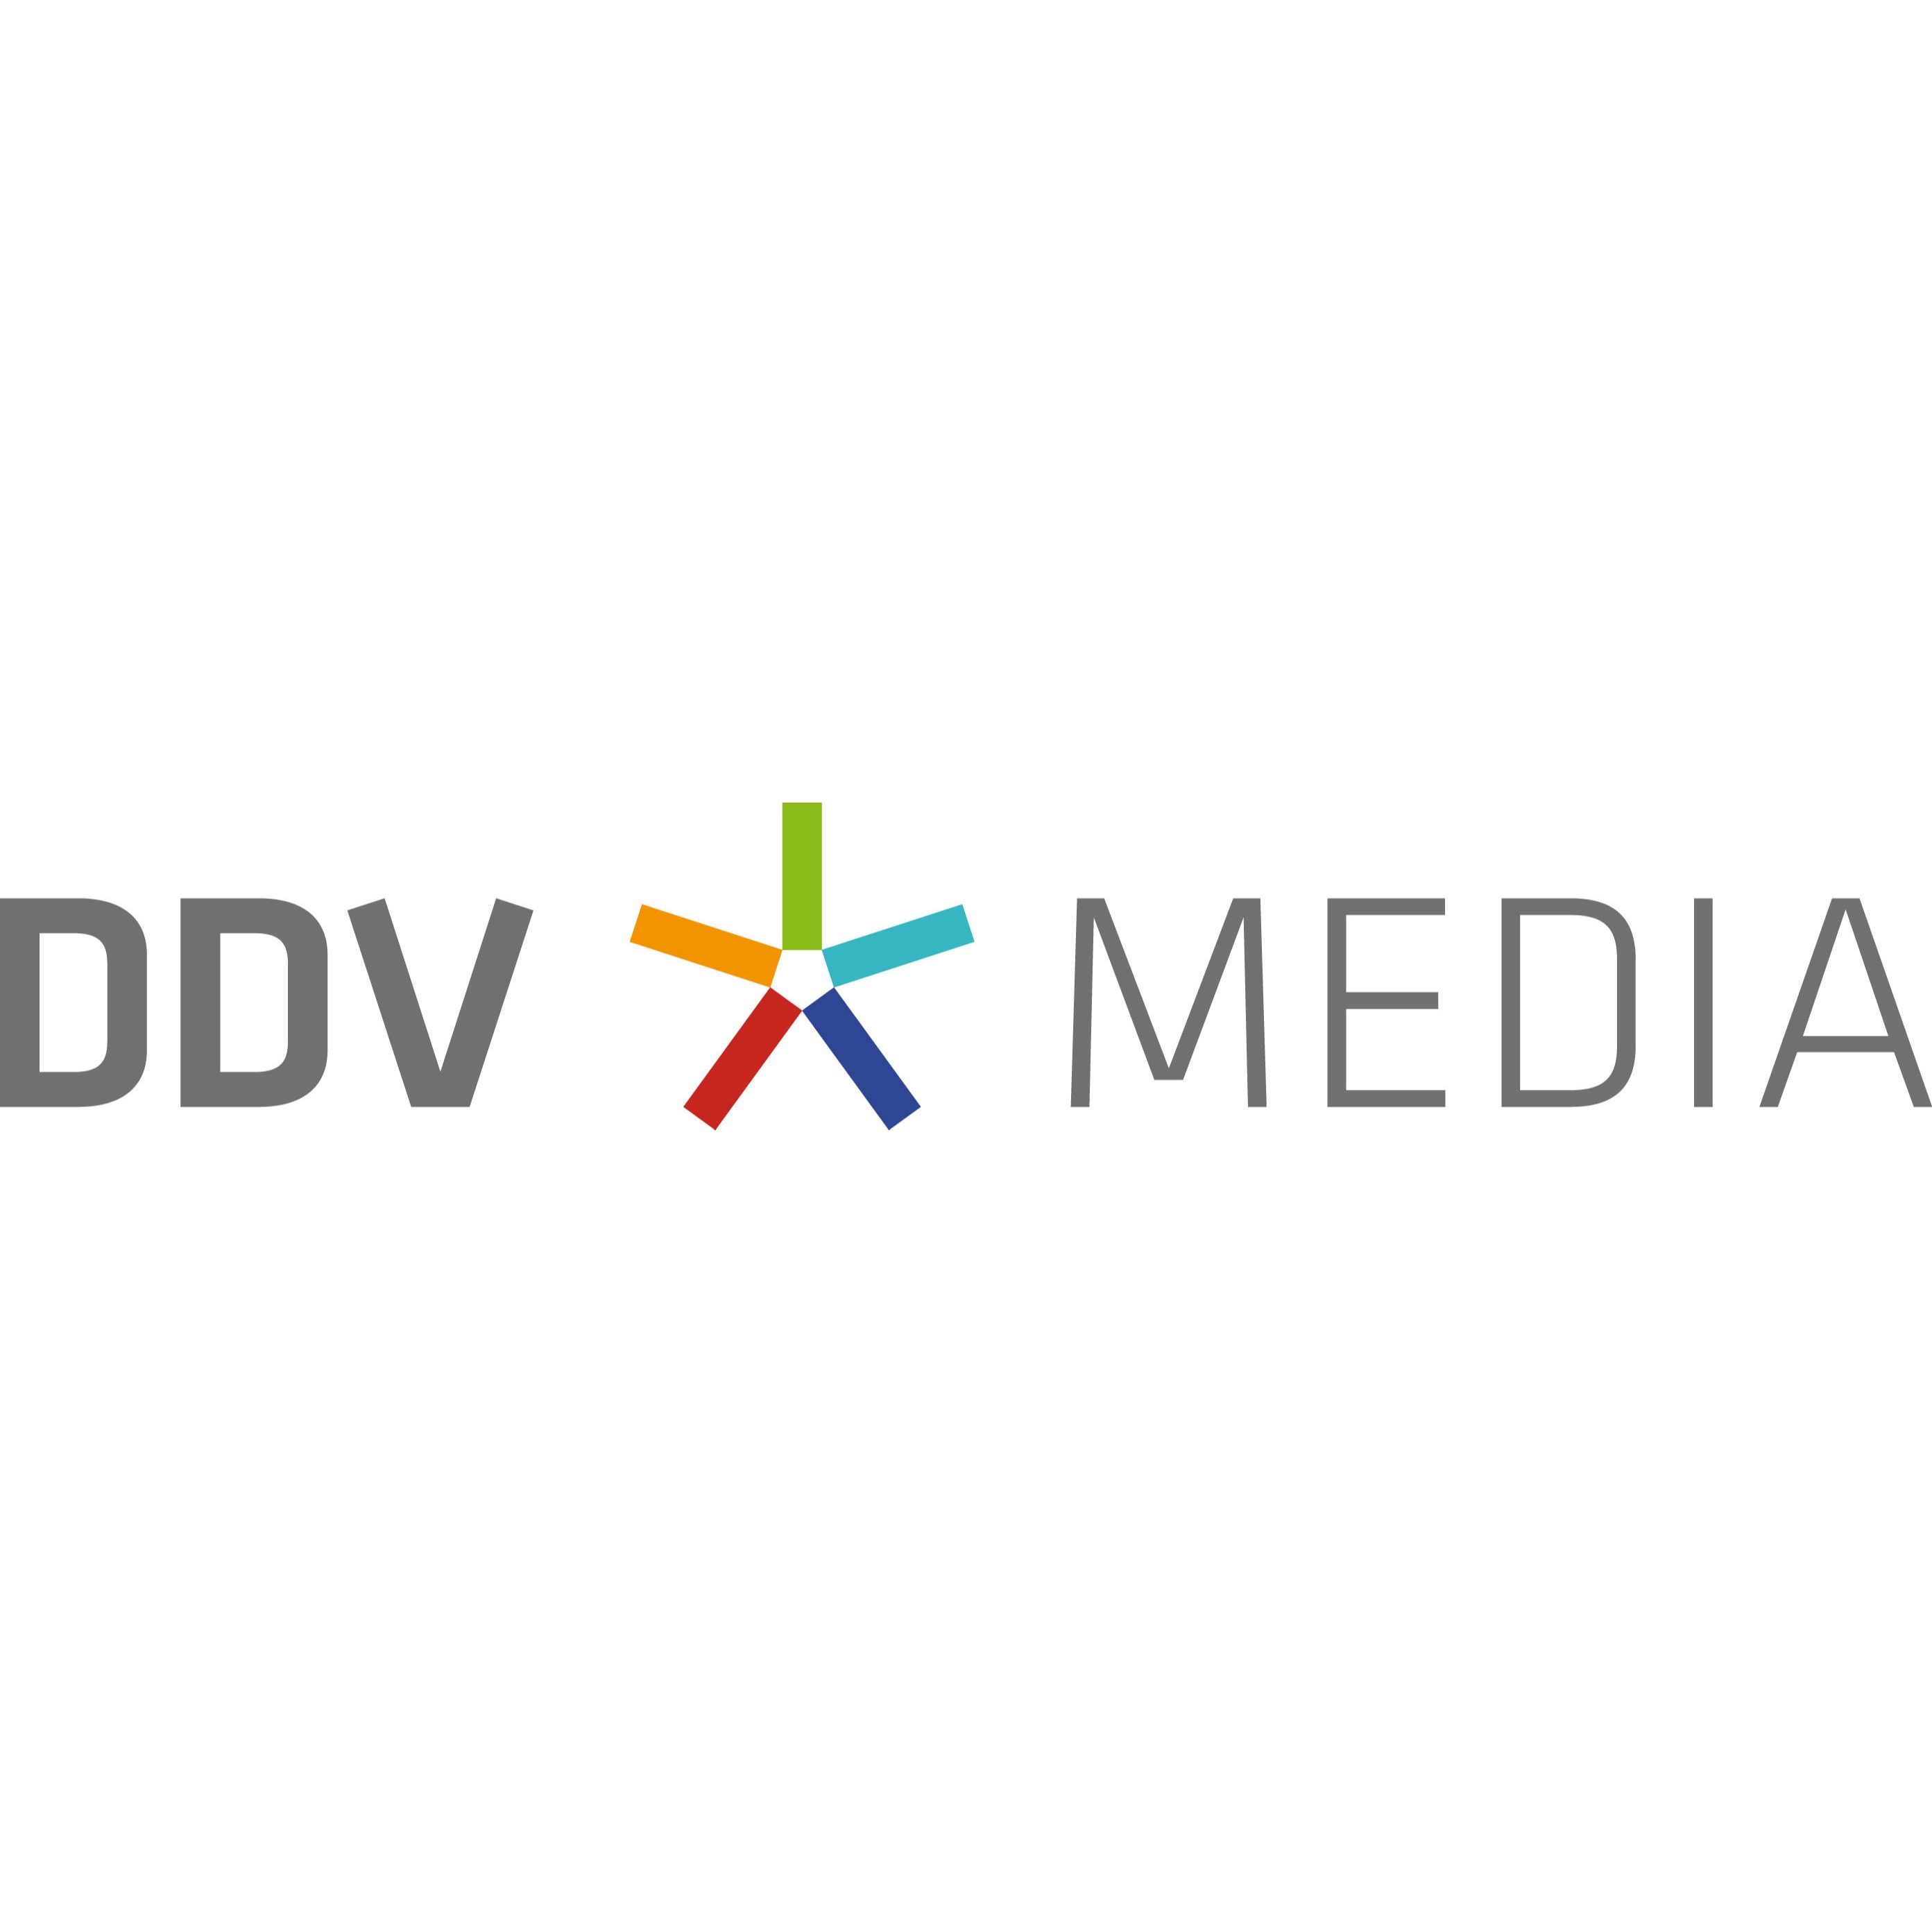 Logo DDV Media